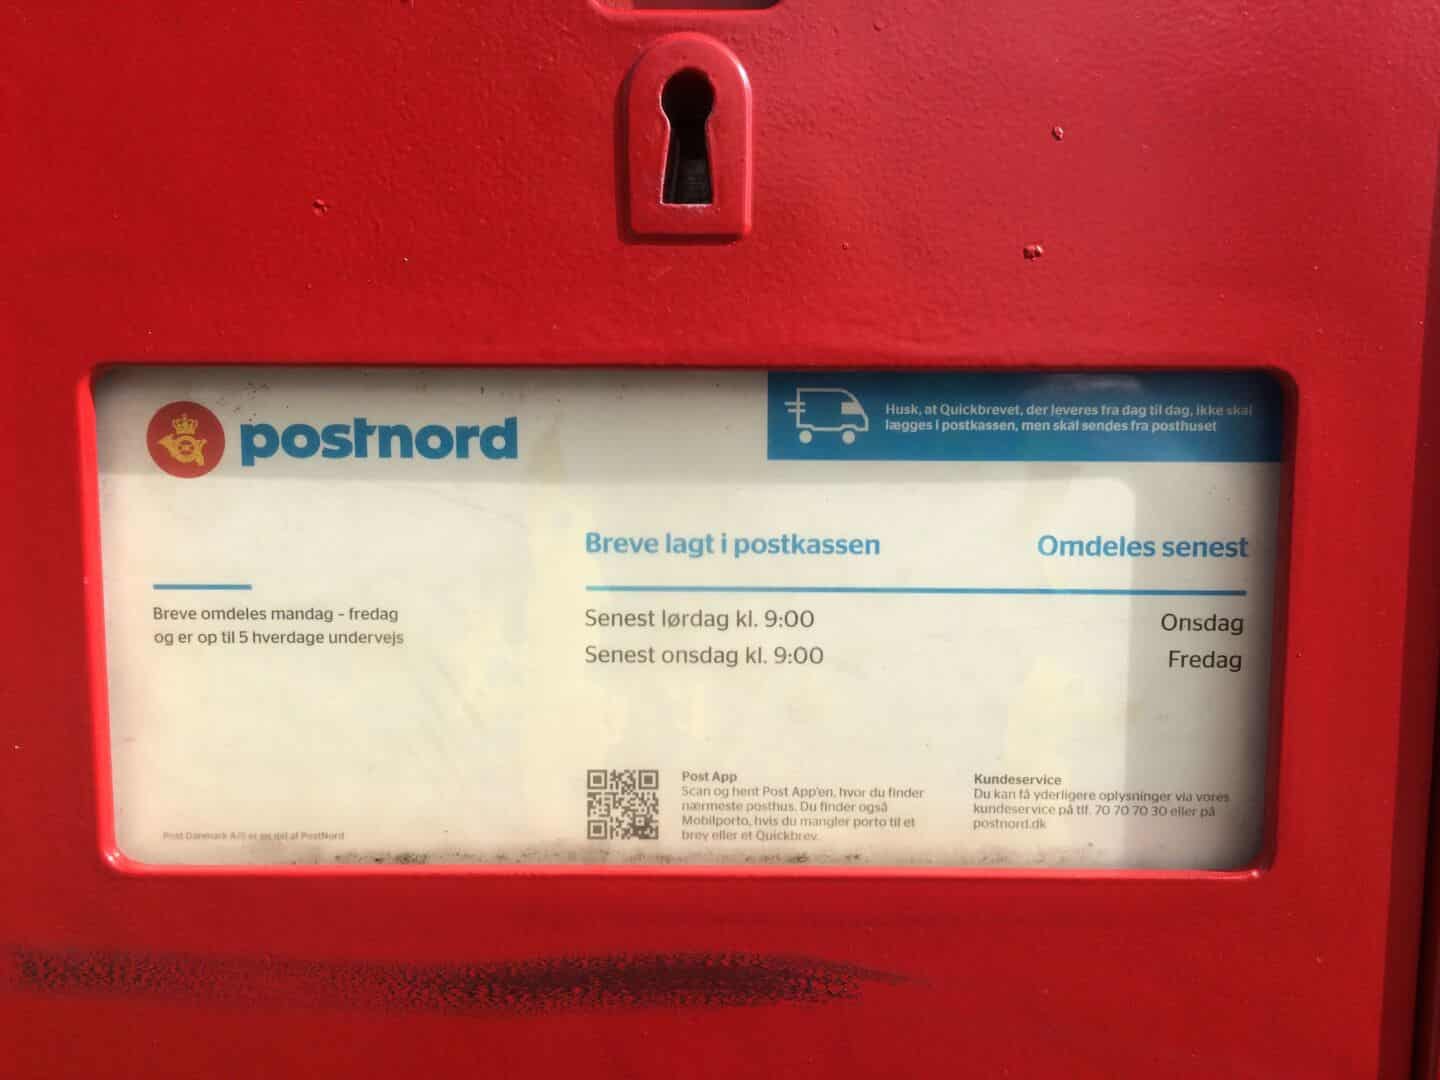 Energize præsentation Oswald Post Danmark: Dyb beklagelse over overfyldt Odense-postkasse | fyens.dk